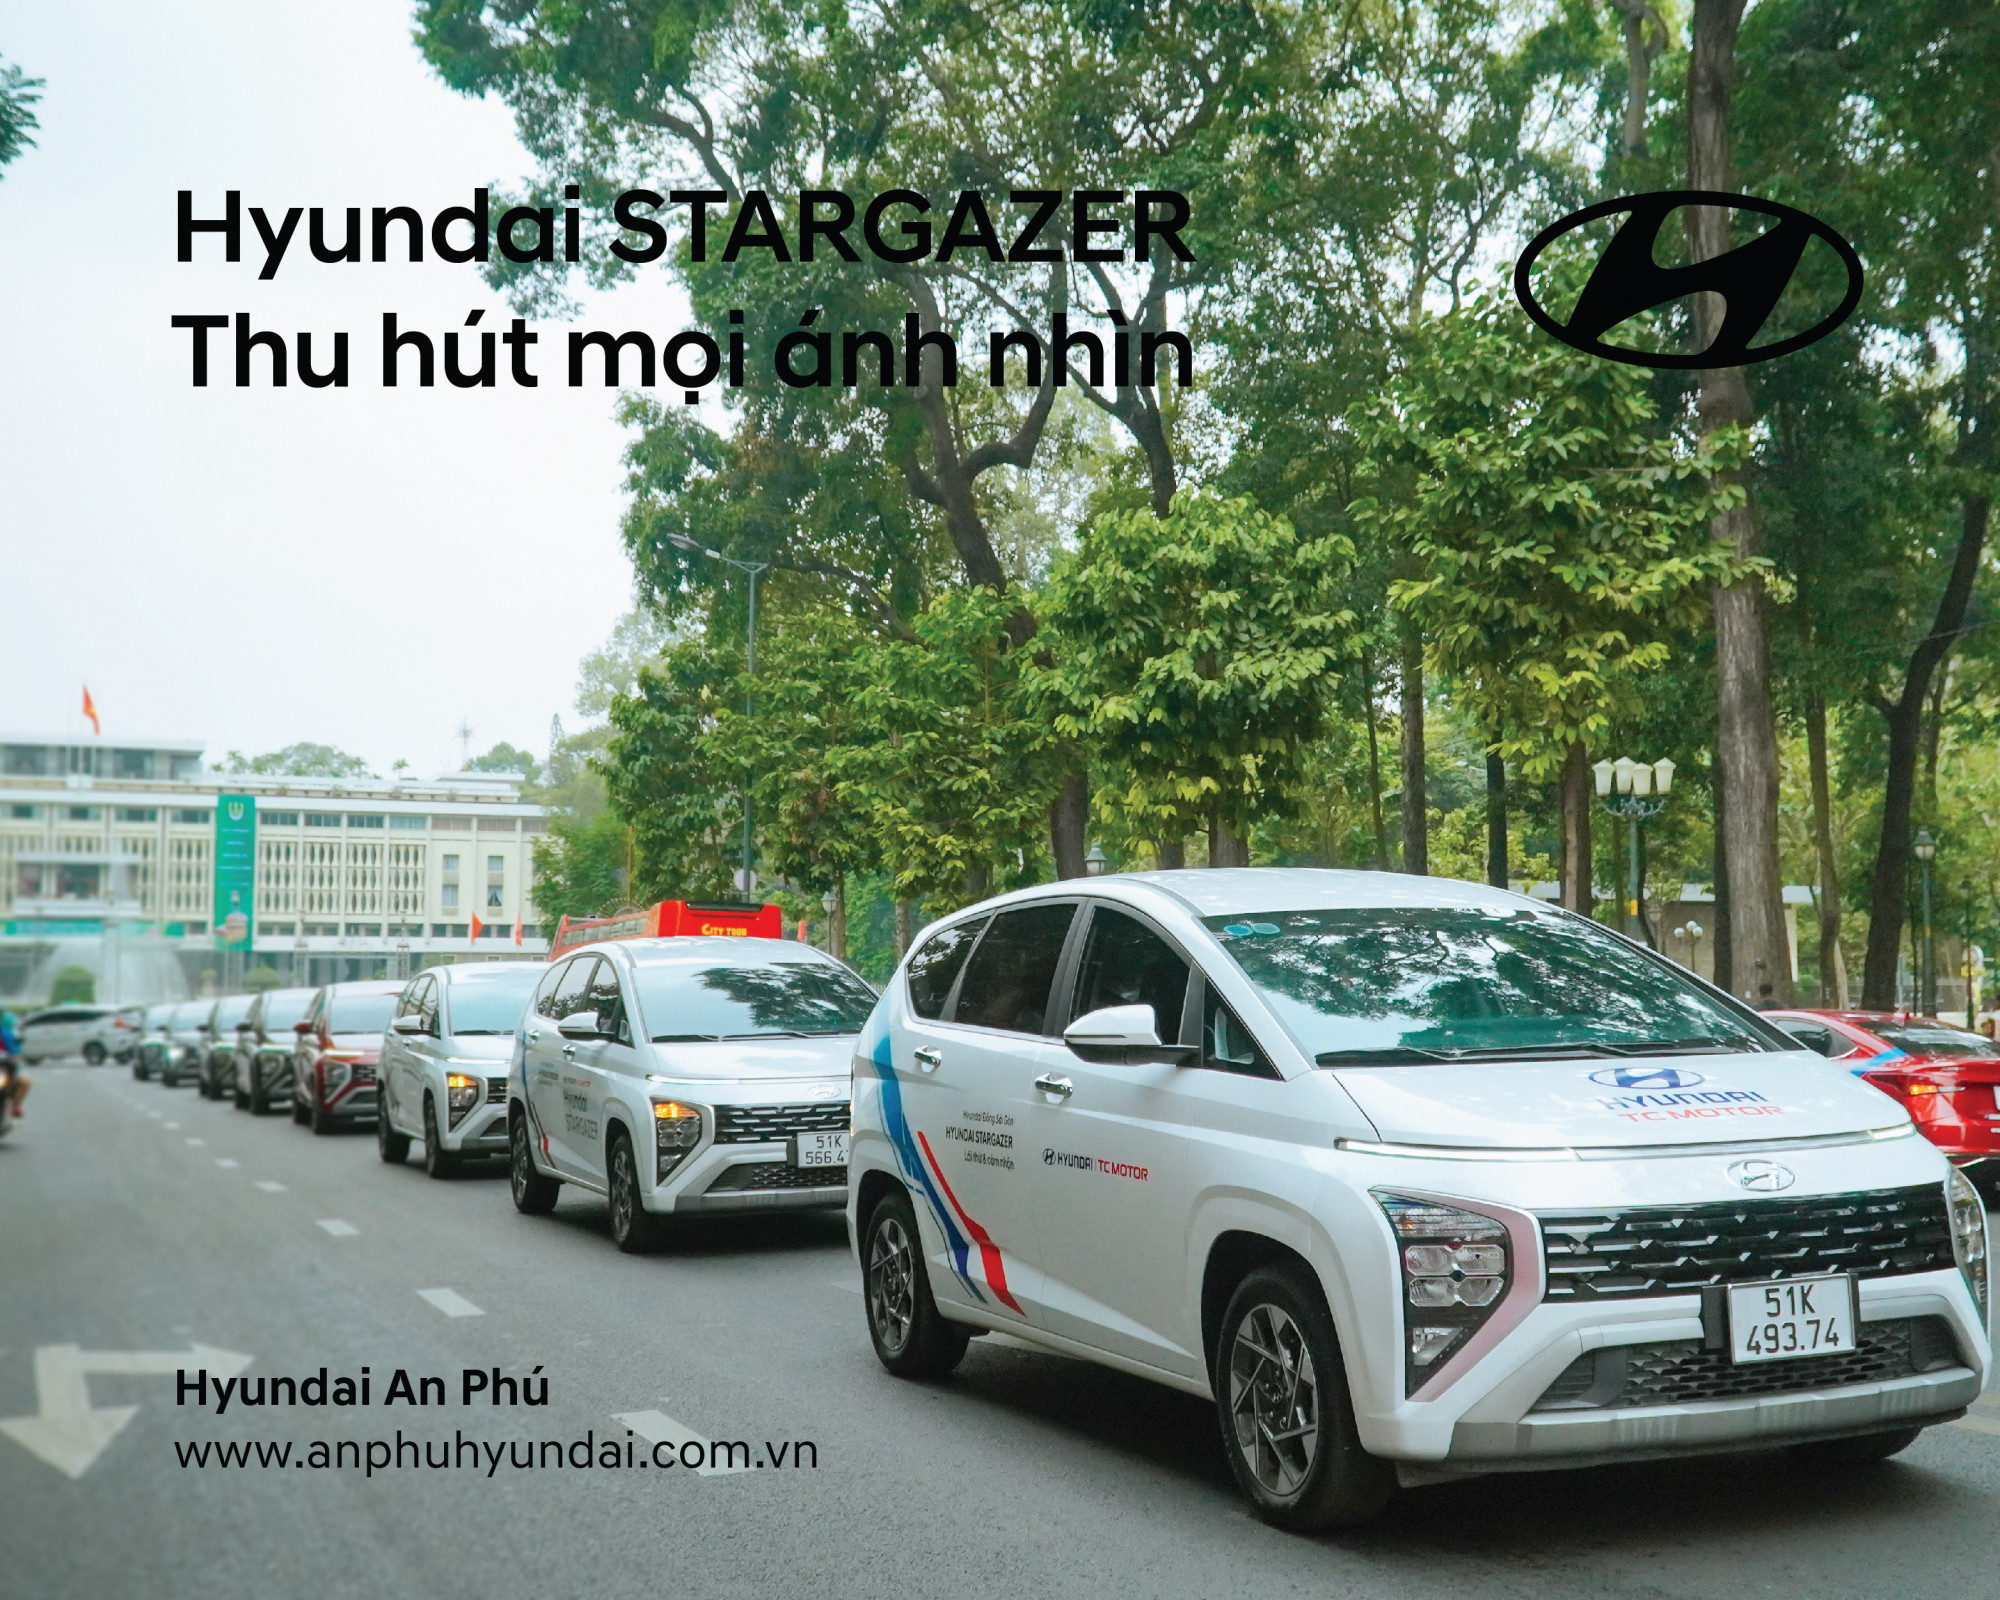 Hyundai STARGAZER THU HÚT MỌI ÁNH NHÌN